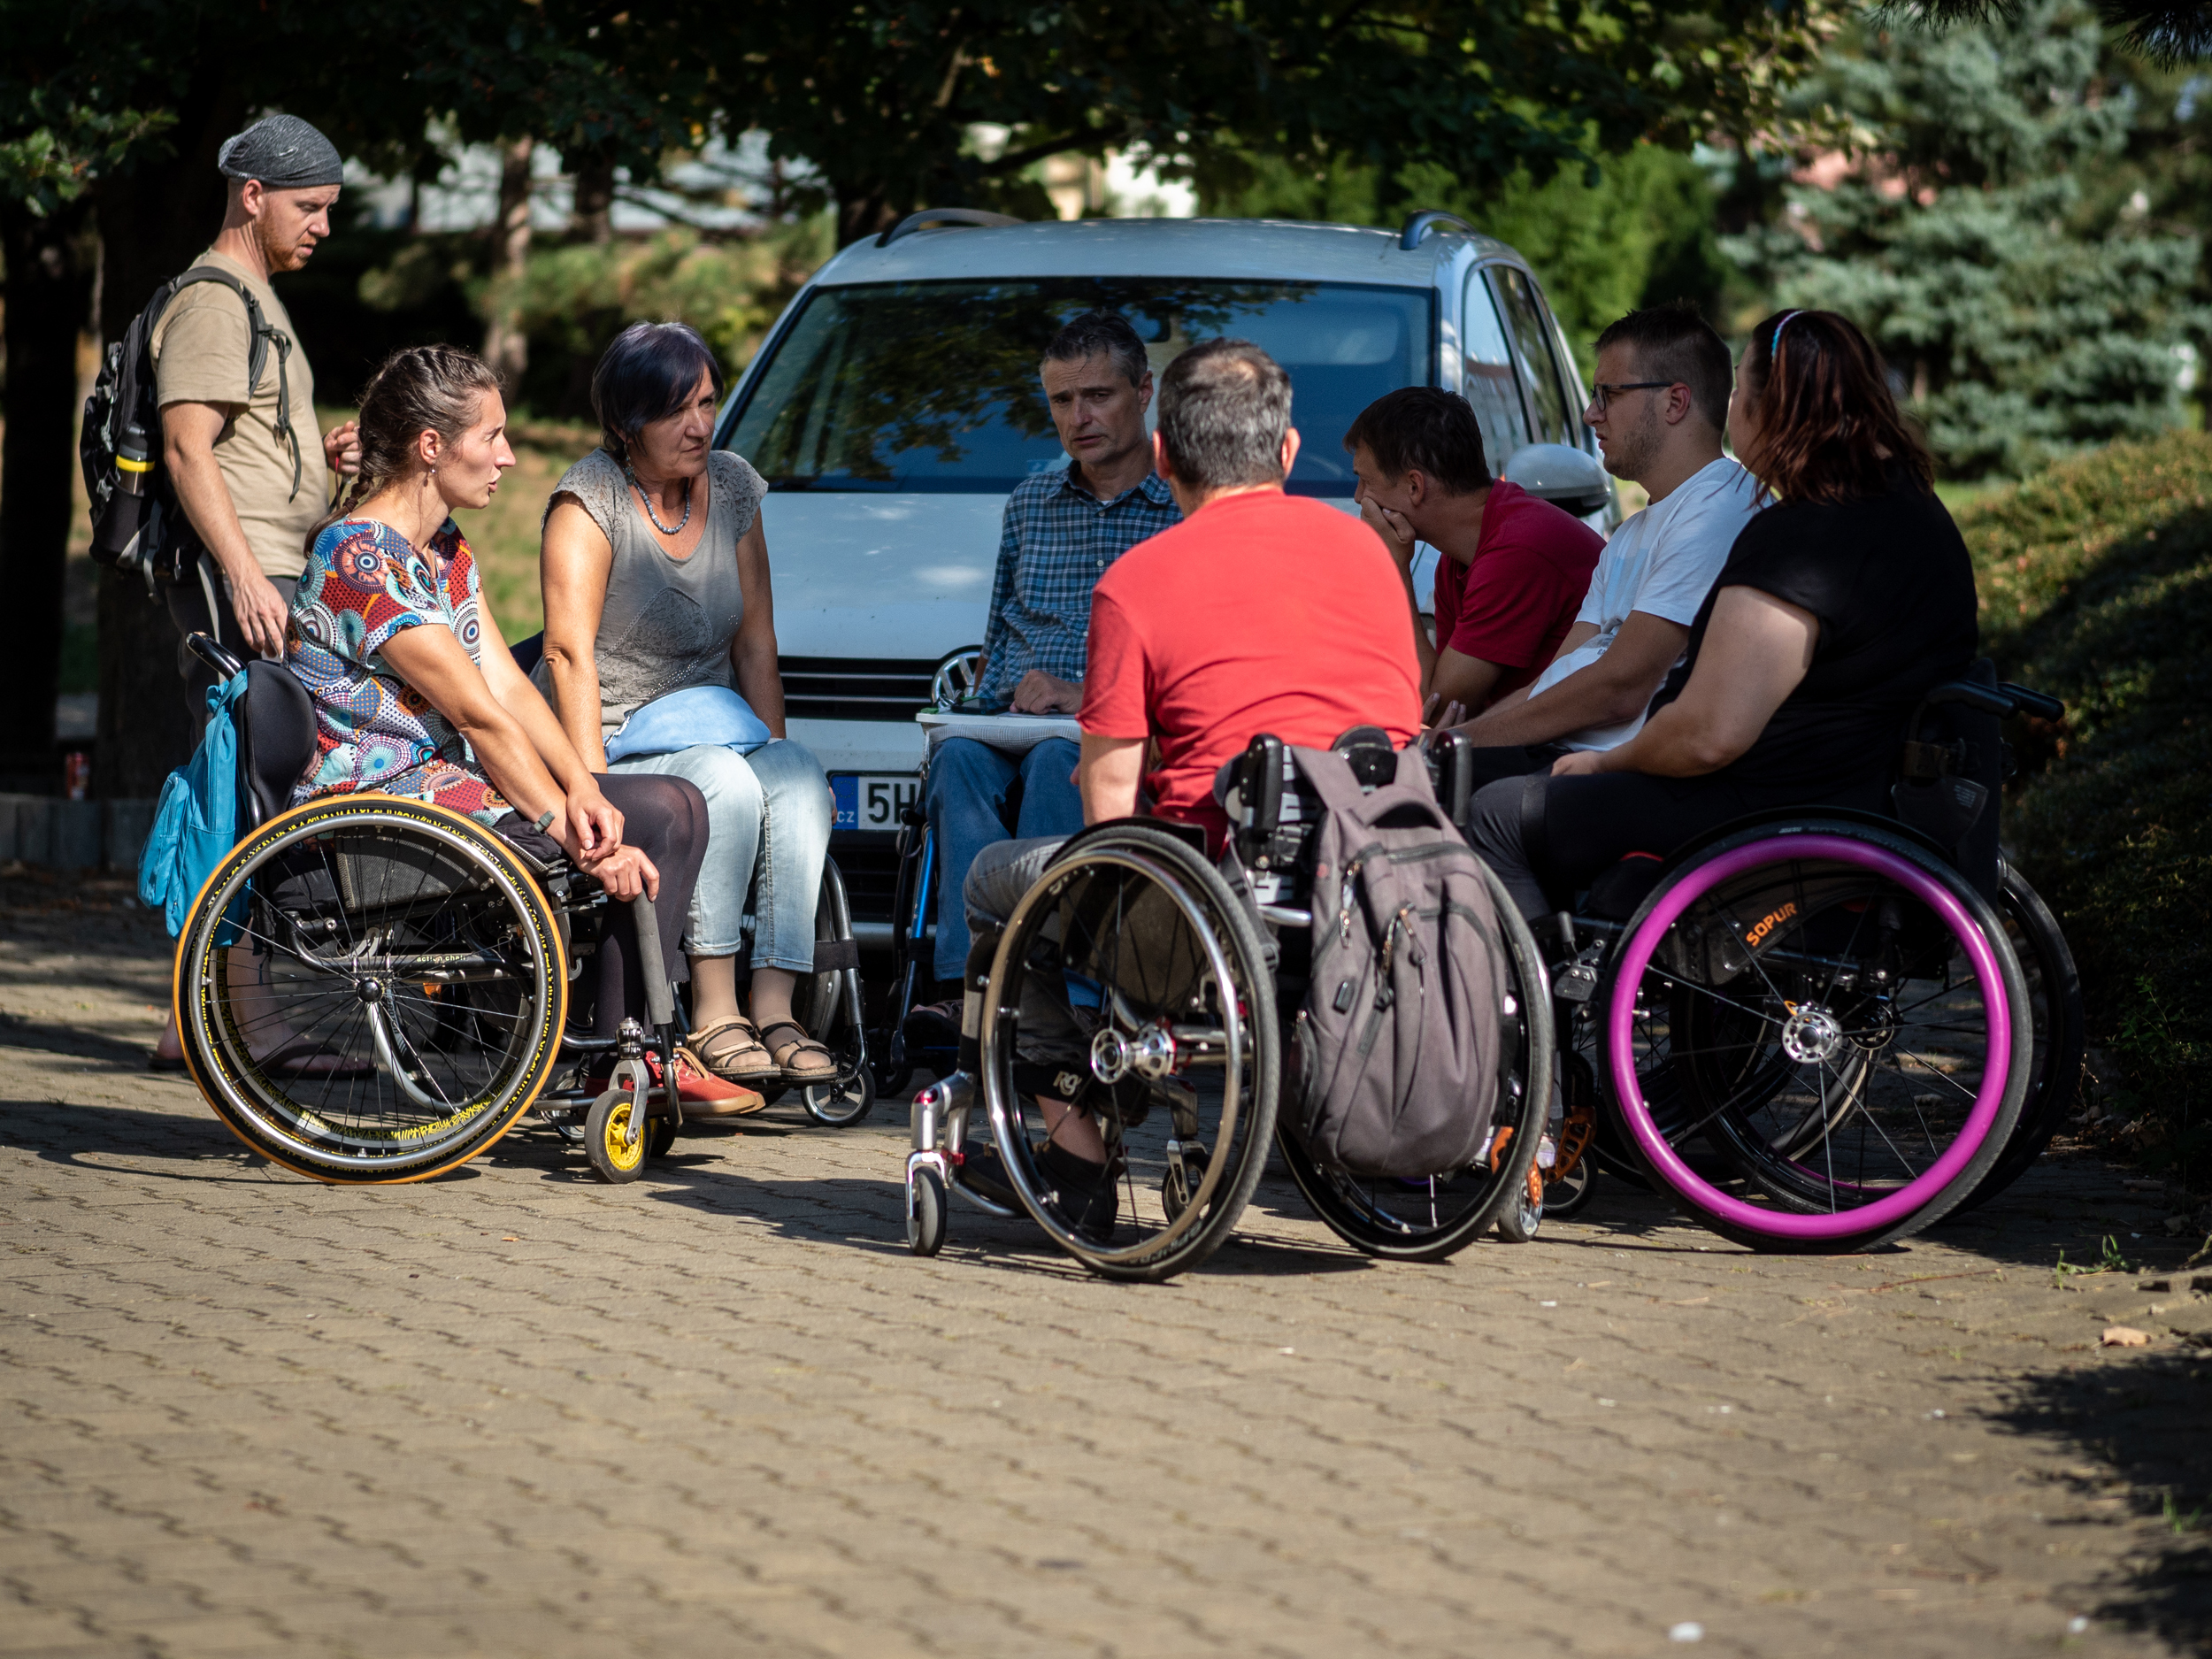 Peer mentoring je sociální služba, v níž zkušený vozíčkář předává své zkušenosti člověku, jenž je na vozíku čerstvě.